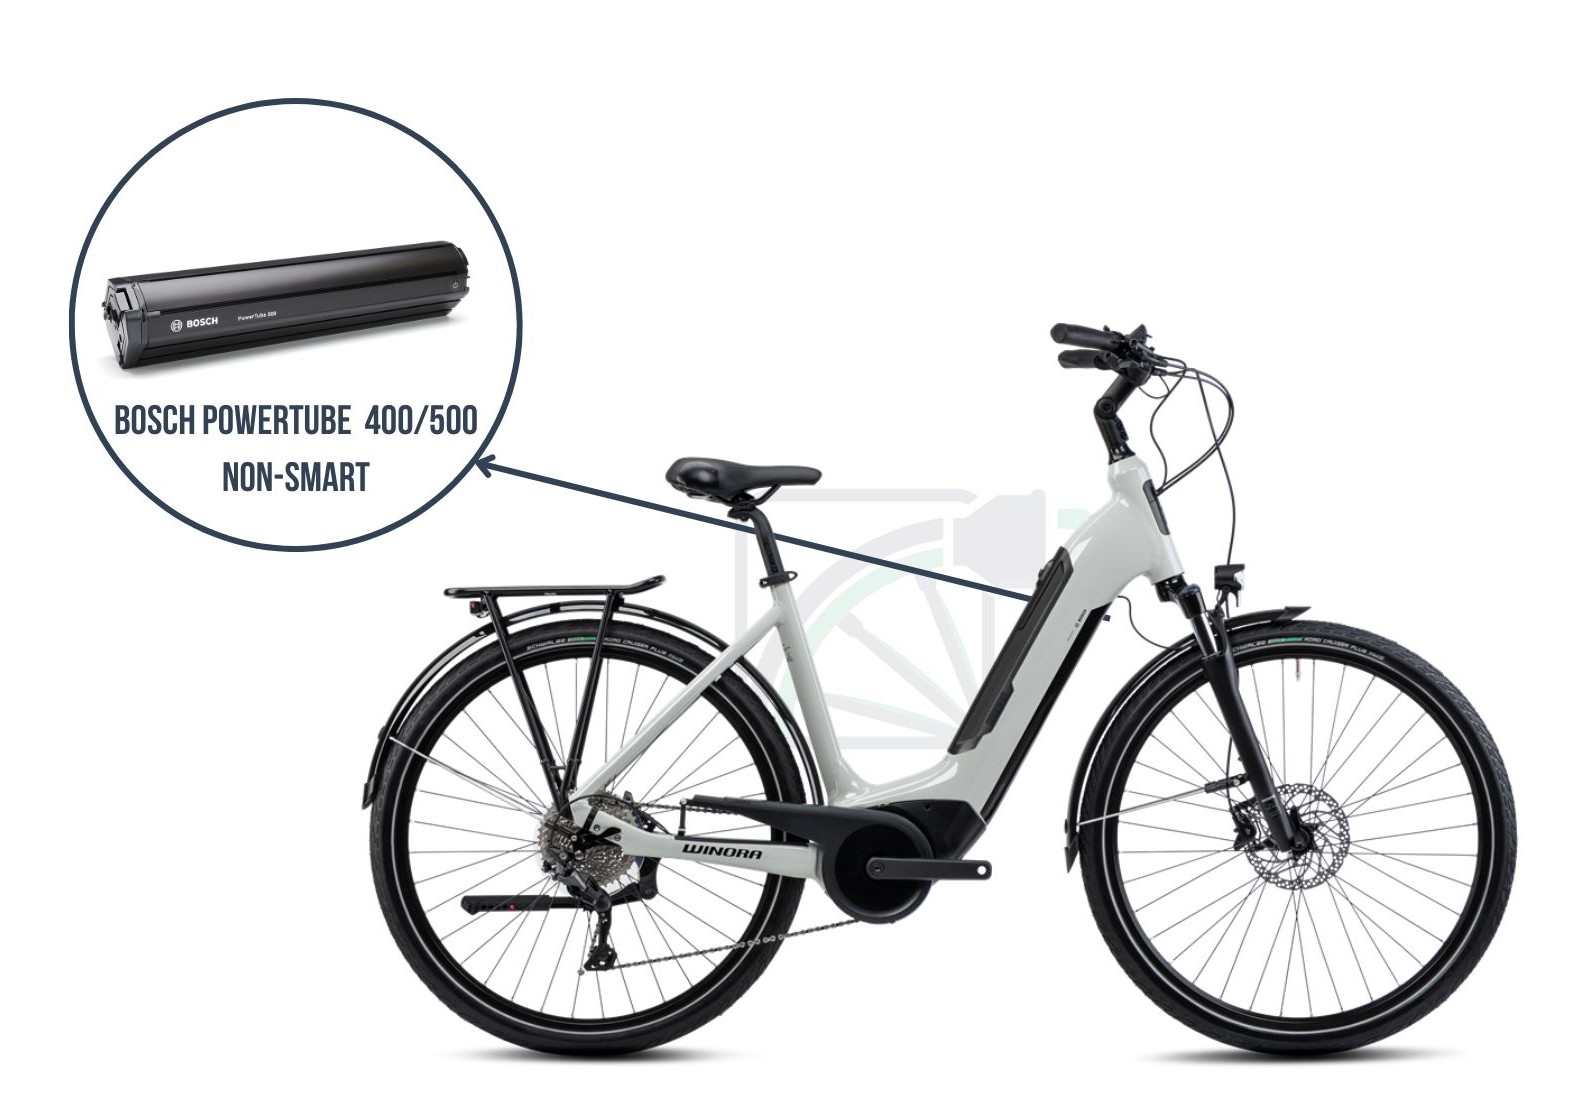 På dette billede ses Winora Sinus Tria 10. Her fremhæves batteriet, der hører til denne cykel, nemlig Bosch Powertube 400/500 non-SMART.